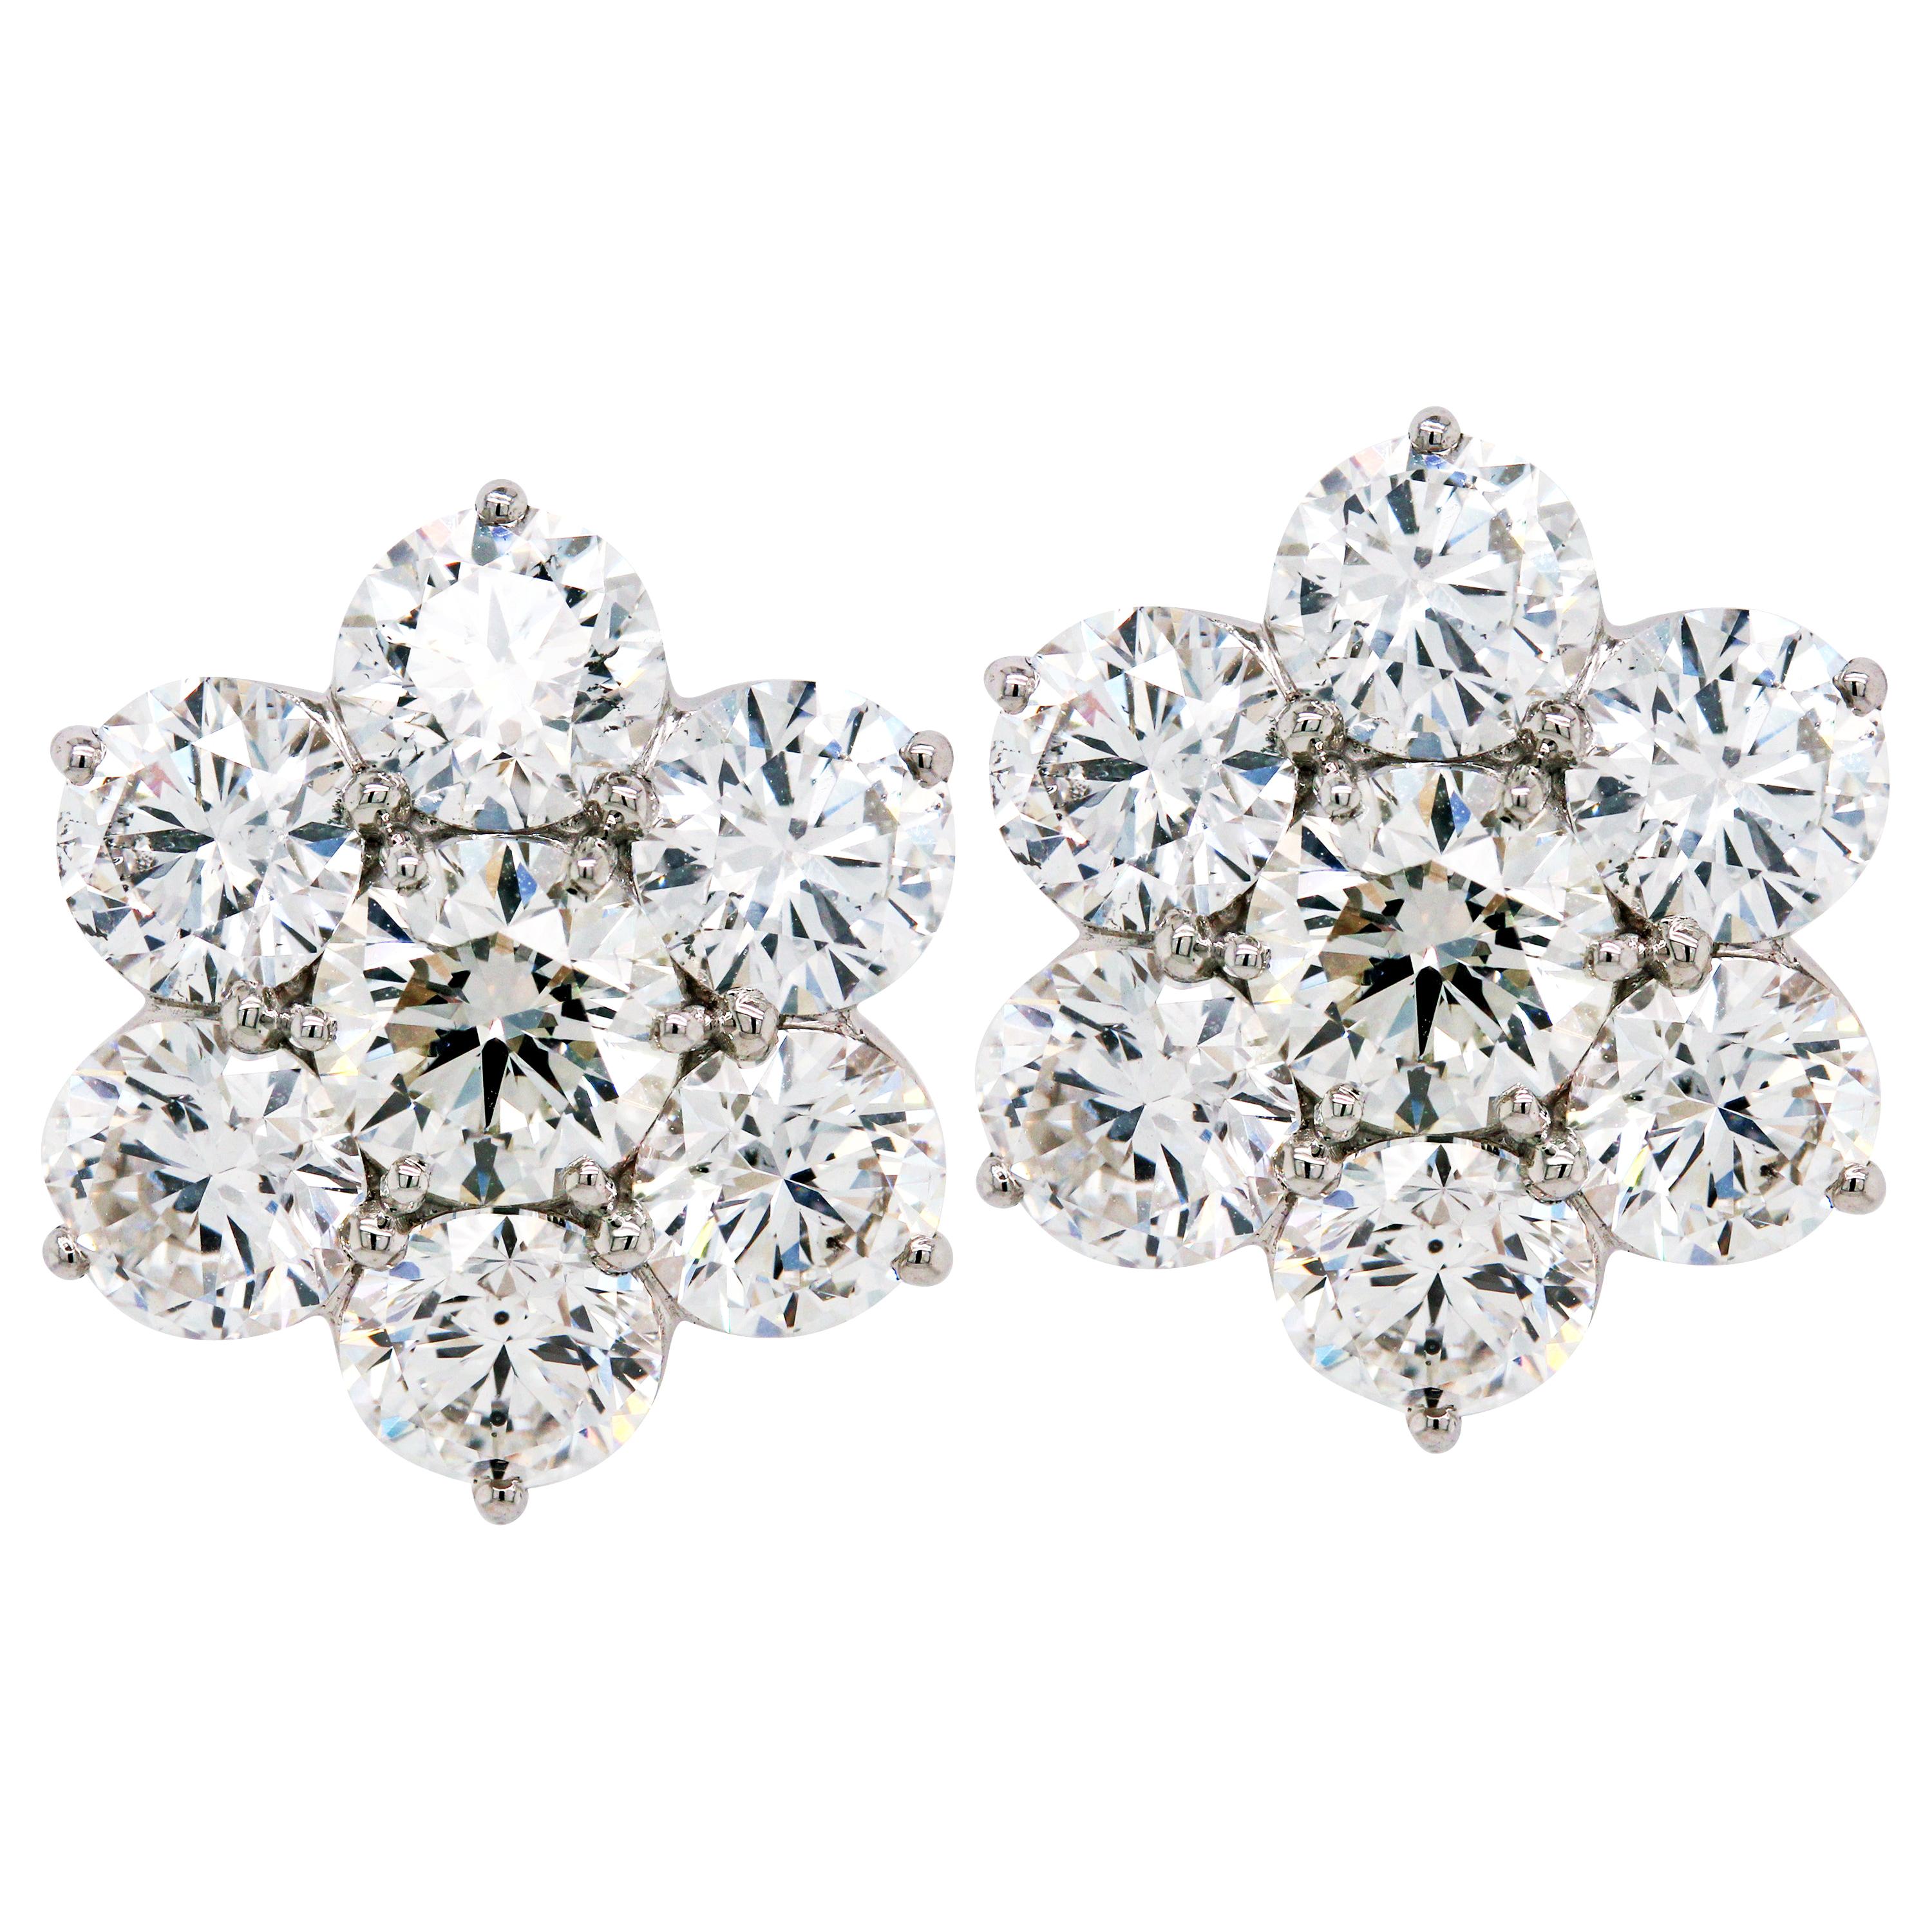 Diamond Cluster Stud Earrings White Gold 7.84 Carat